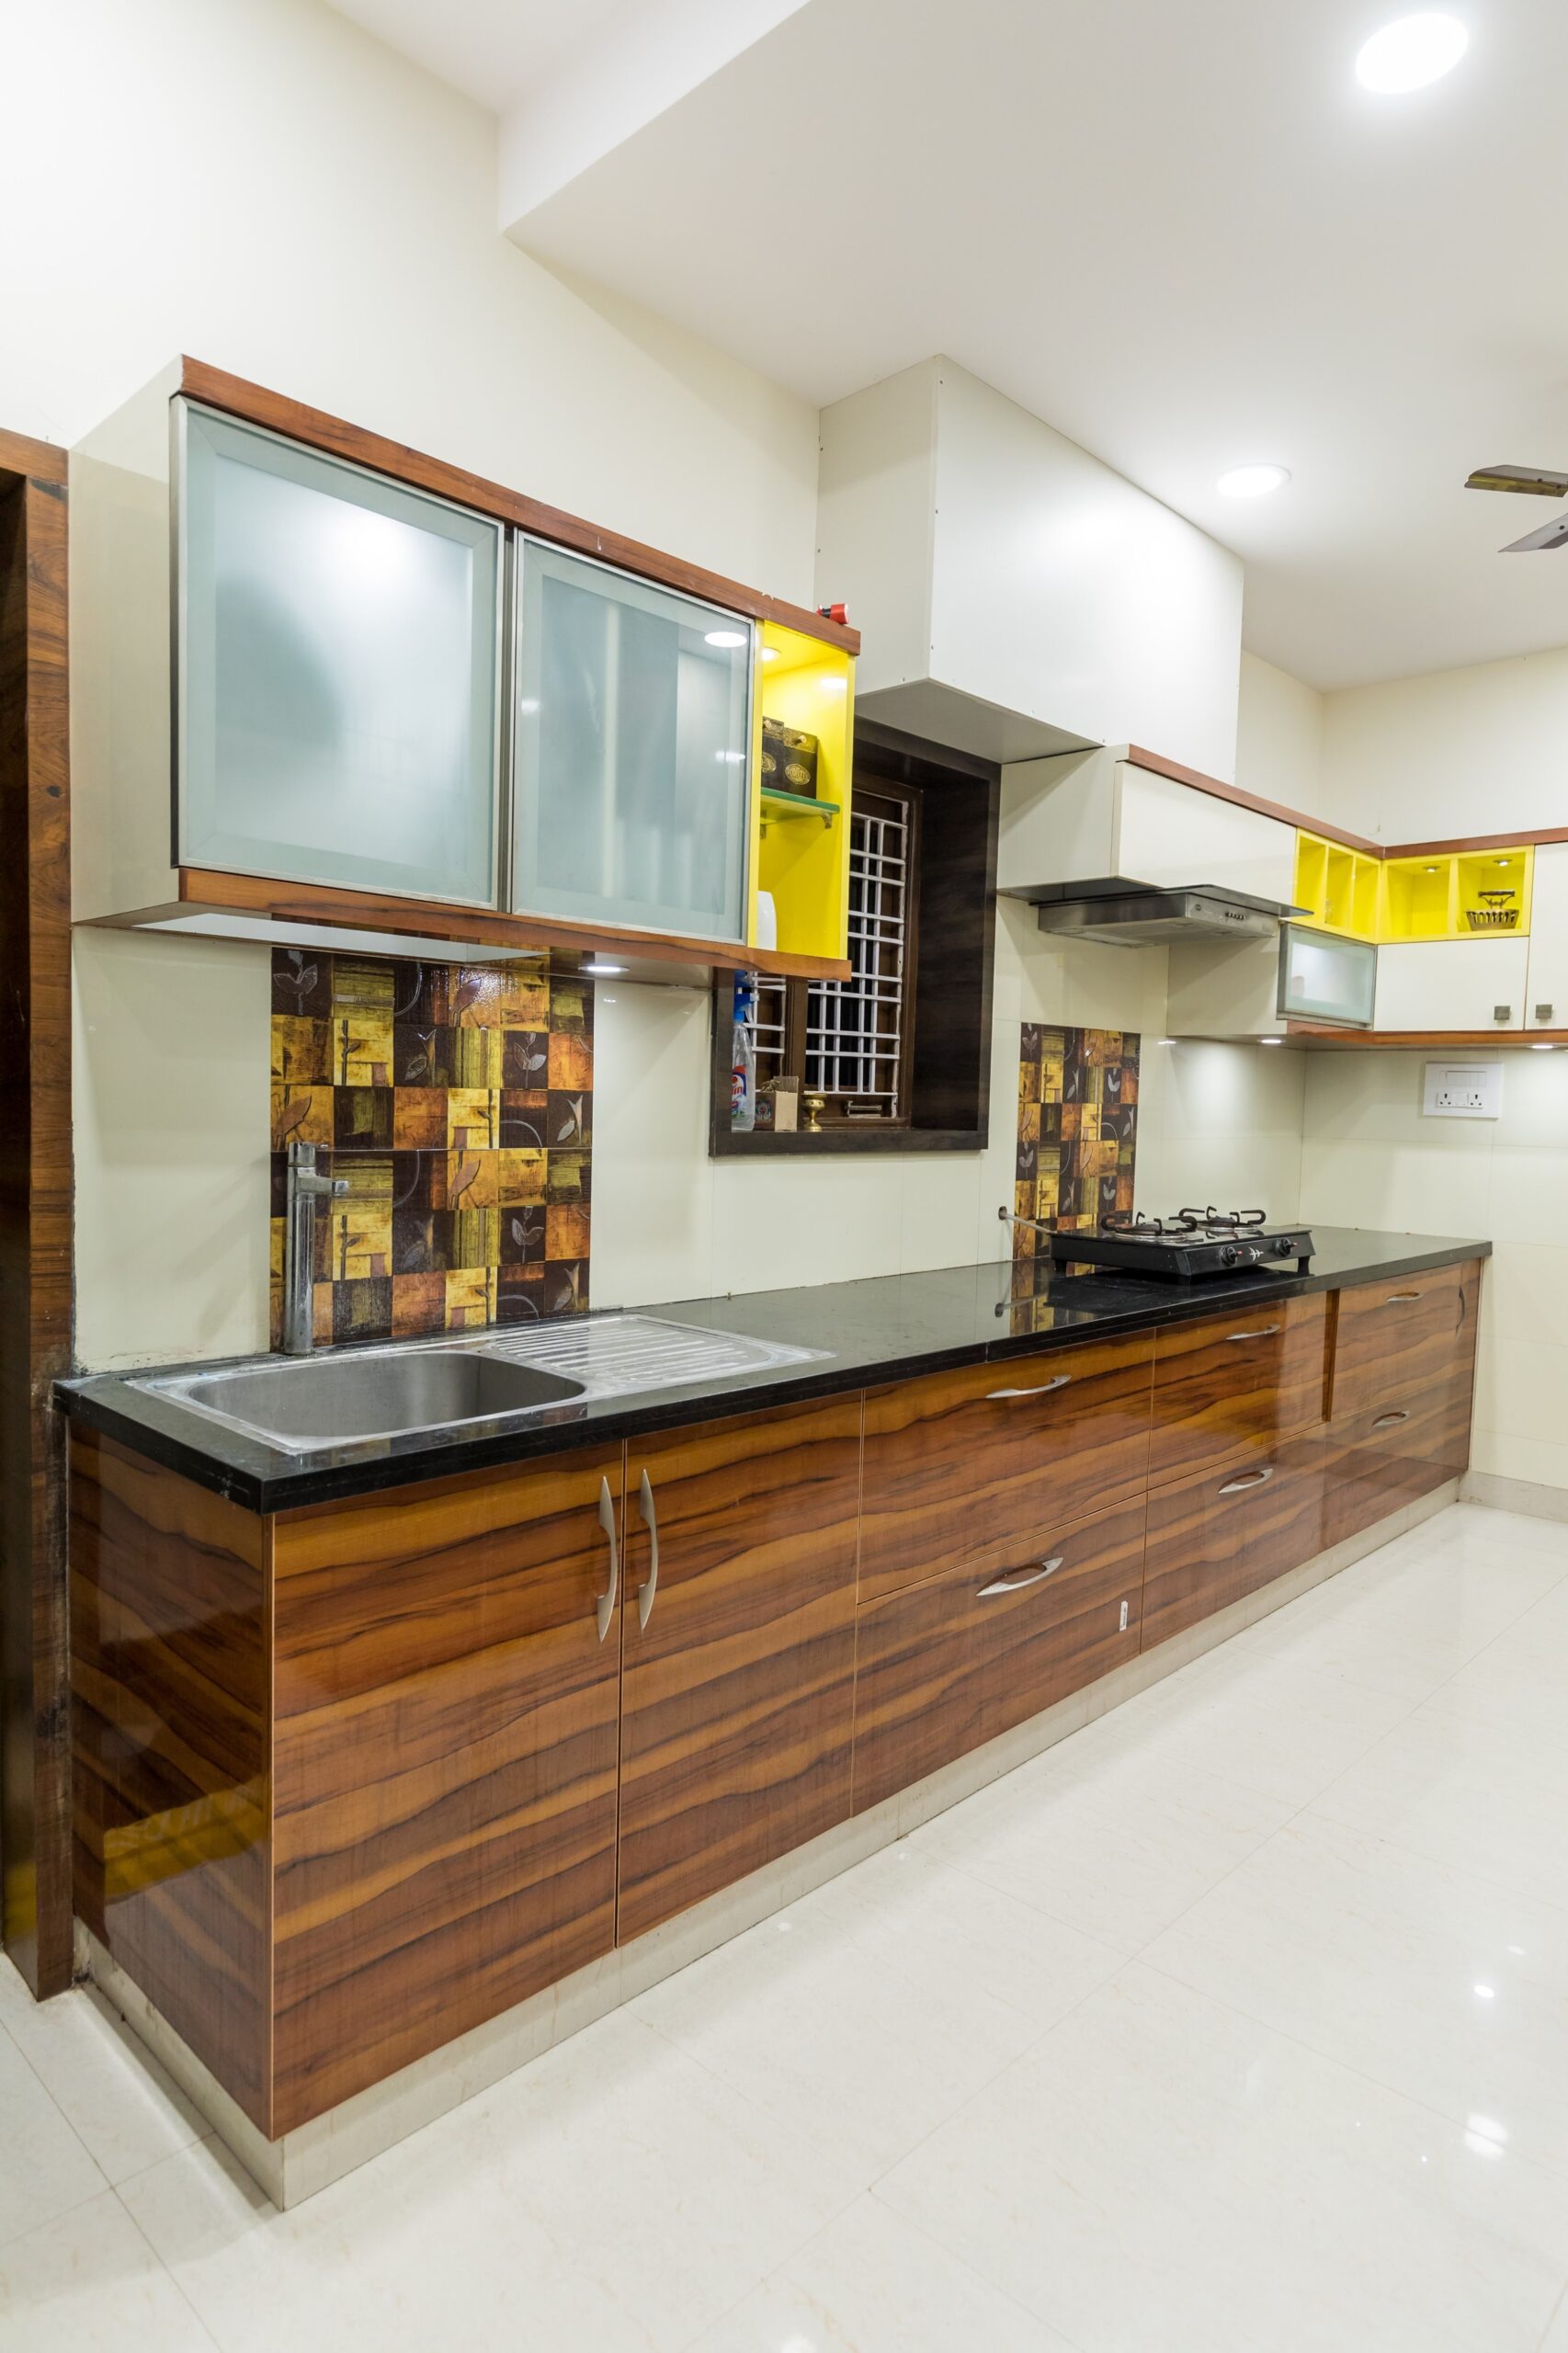 Latest Beautiful Kitchen Interior Designs - interior designs kitchens